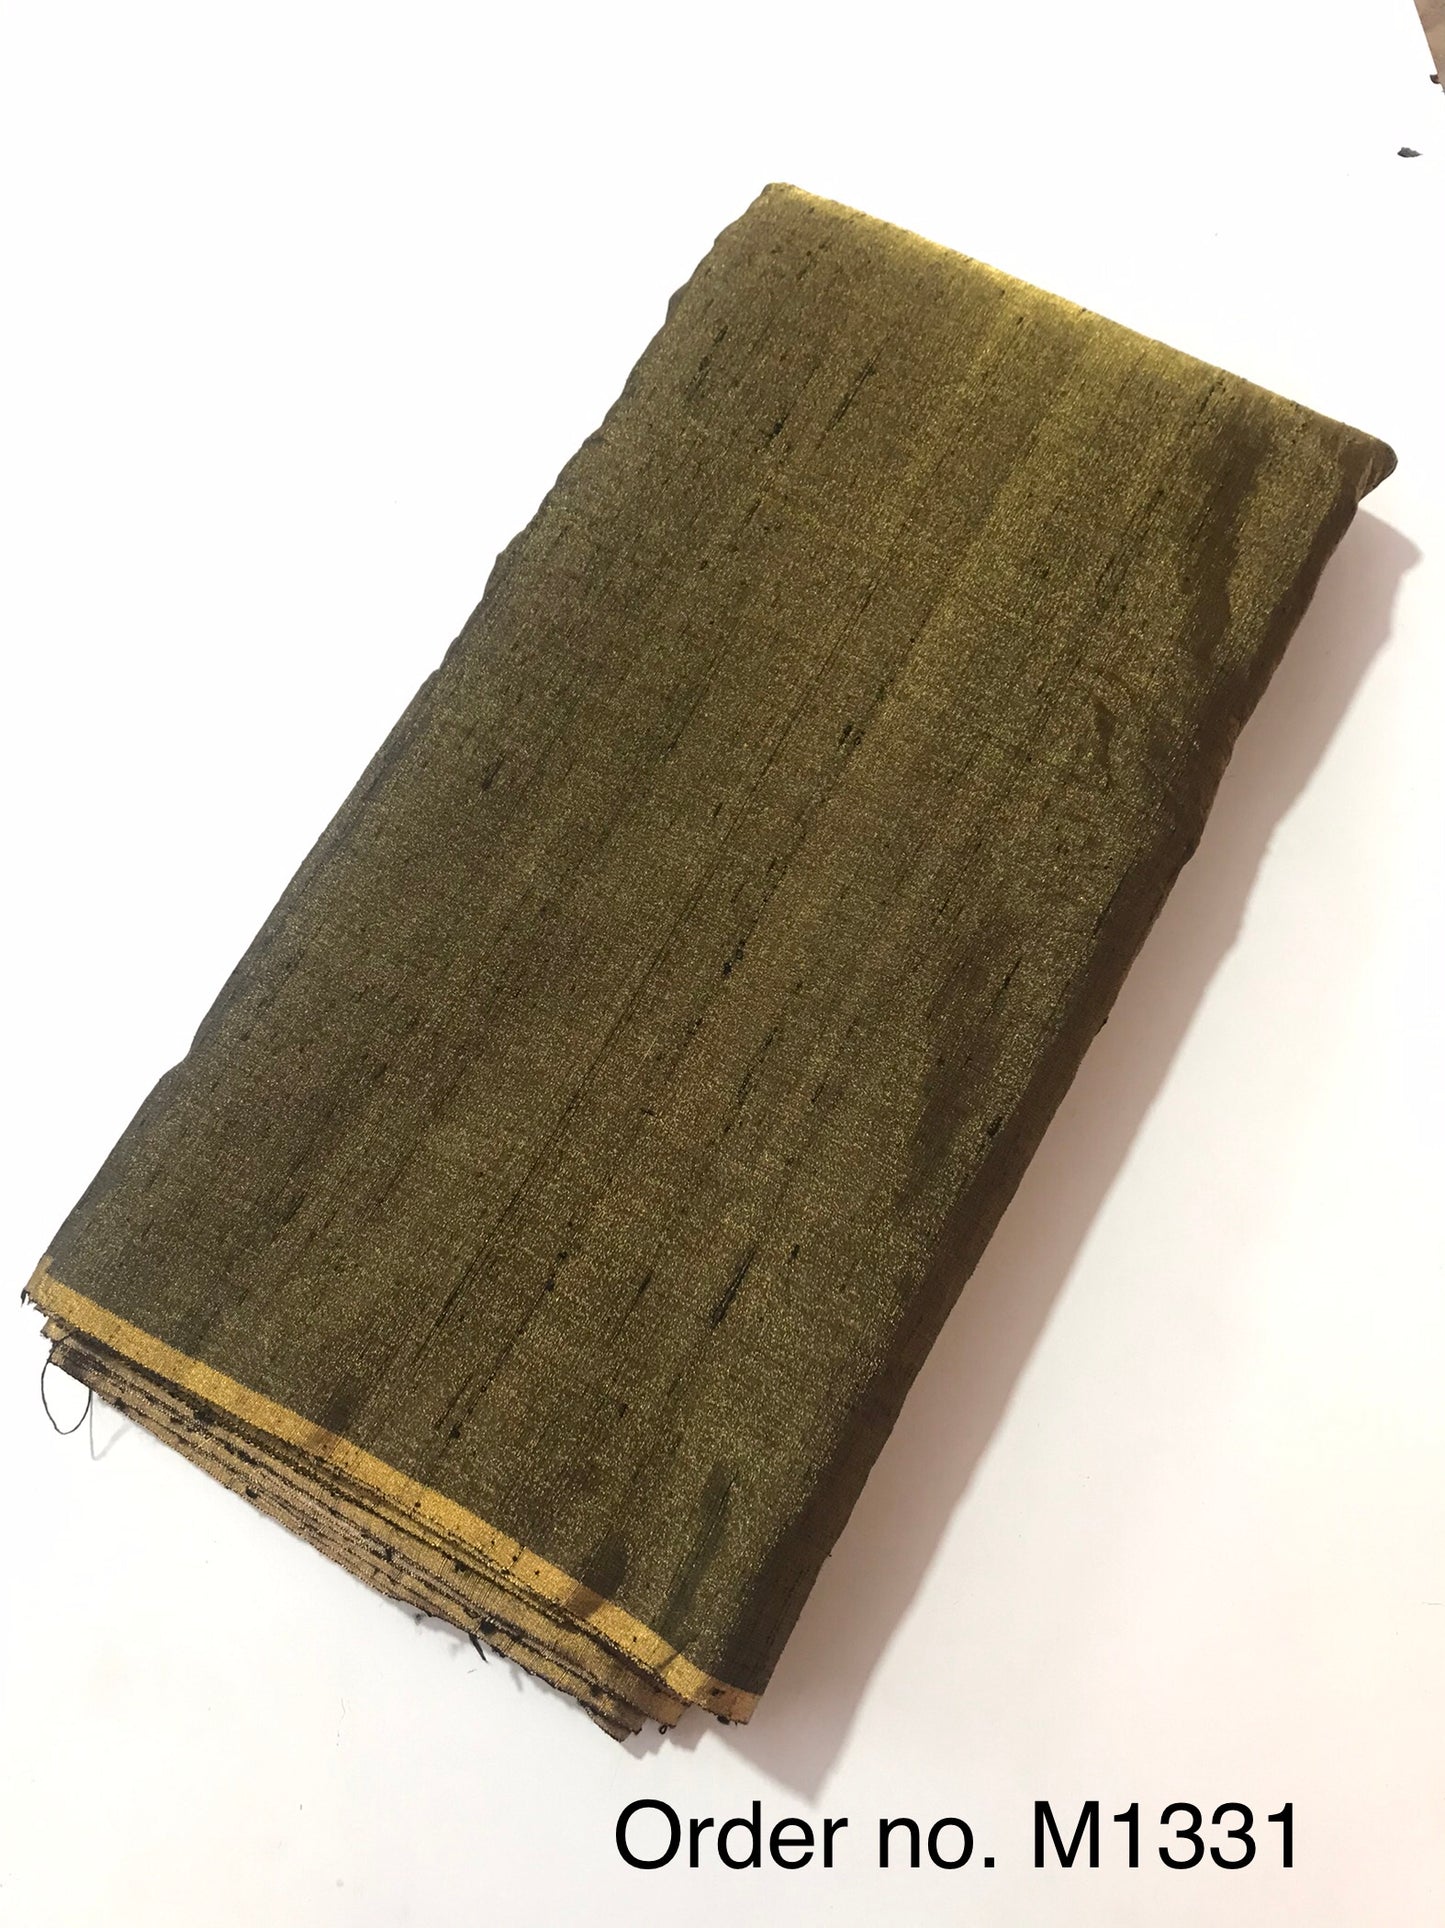 Tissue Raw silk 105gm width 44”